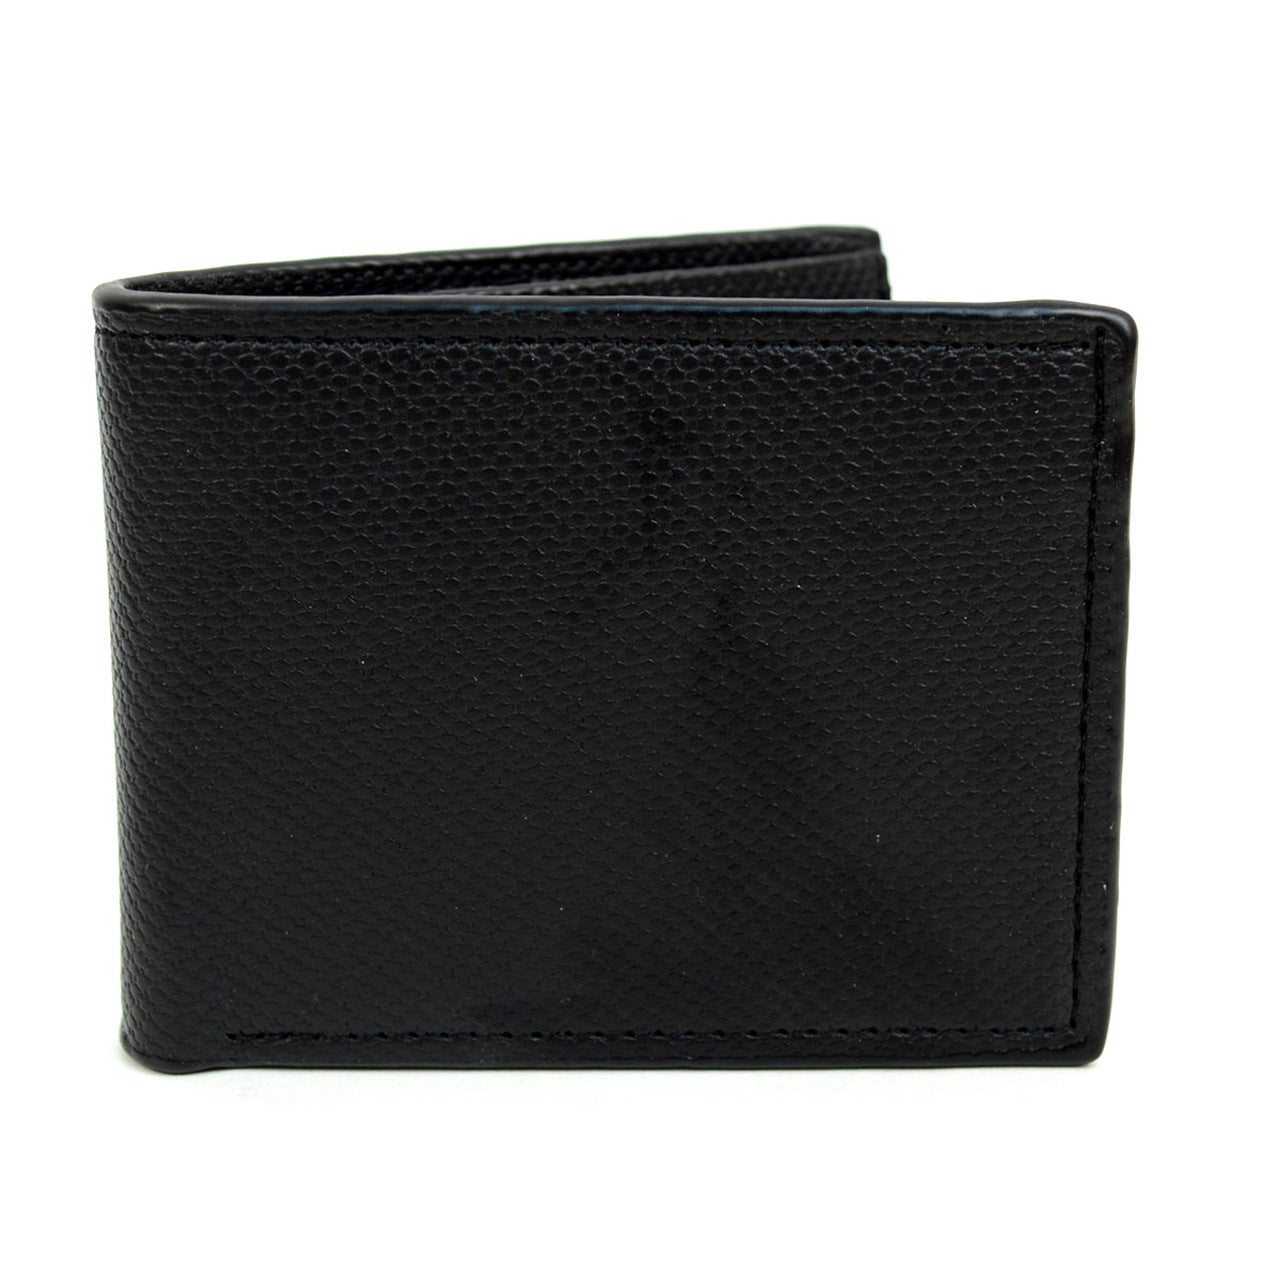 Selini Bi-Fold Leather Men's Wallet, Black